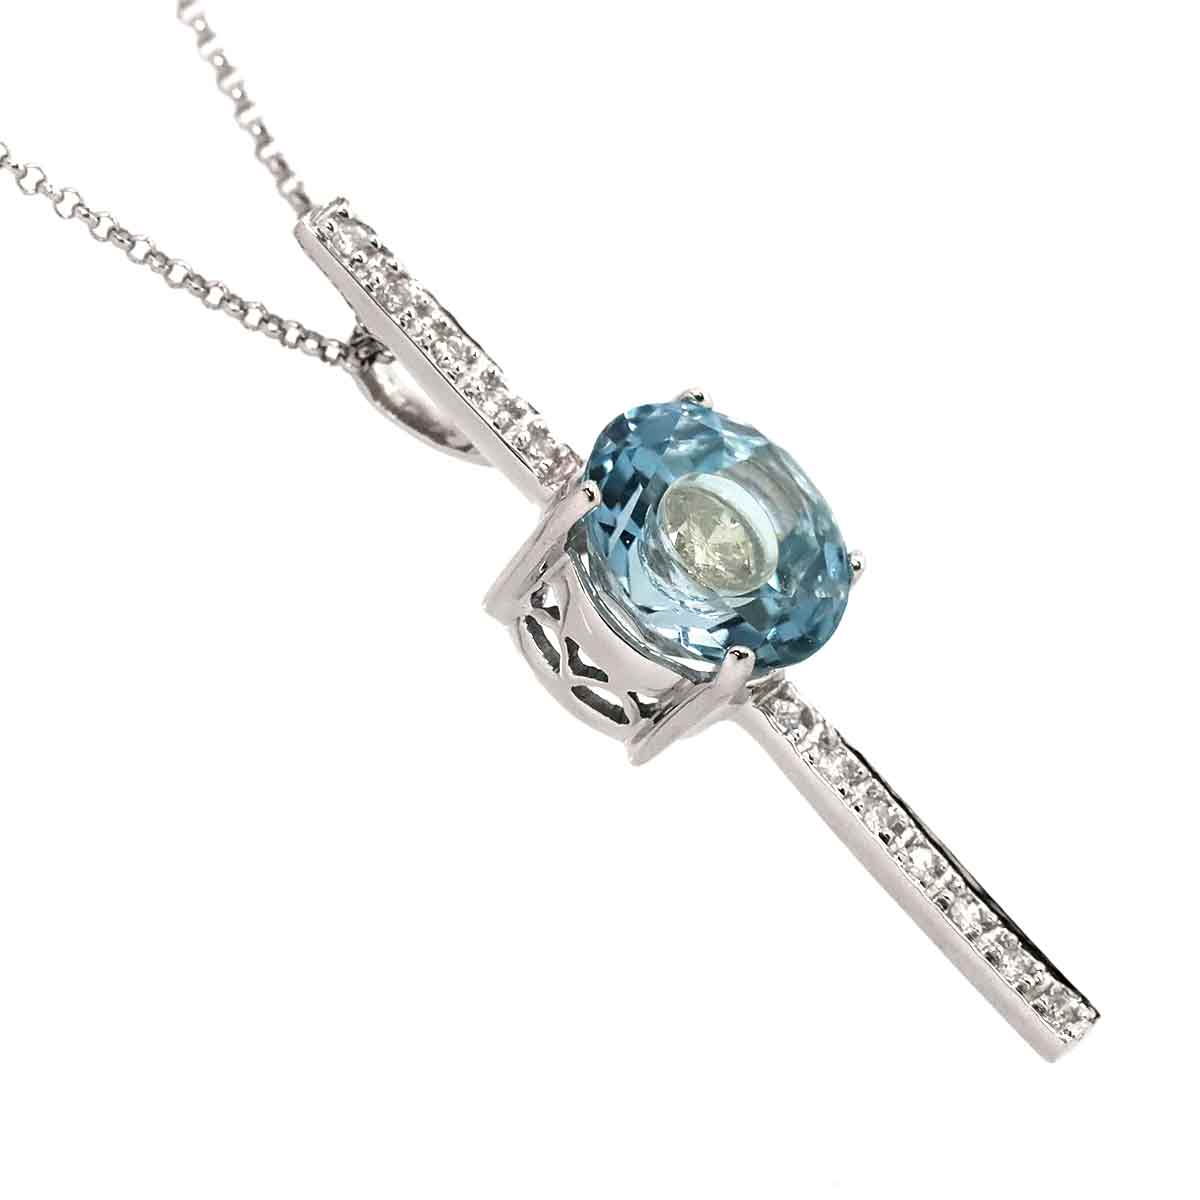 【新品仕上げ】 ブルートパーズ 3.51ct ダイヤ 0.30ct ネックレス 40cm K18 WG ホワイトゴールド 750 Blue Topaz  Diamond Necklace【中古】 | VINTAGE LOVER PURPOSE